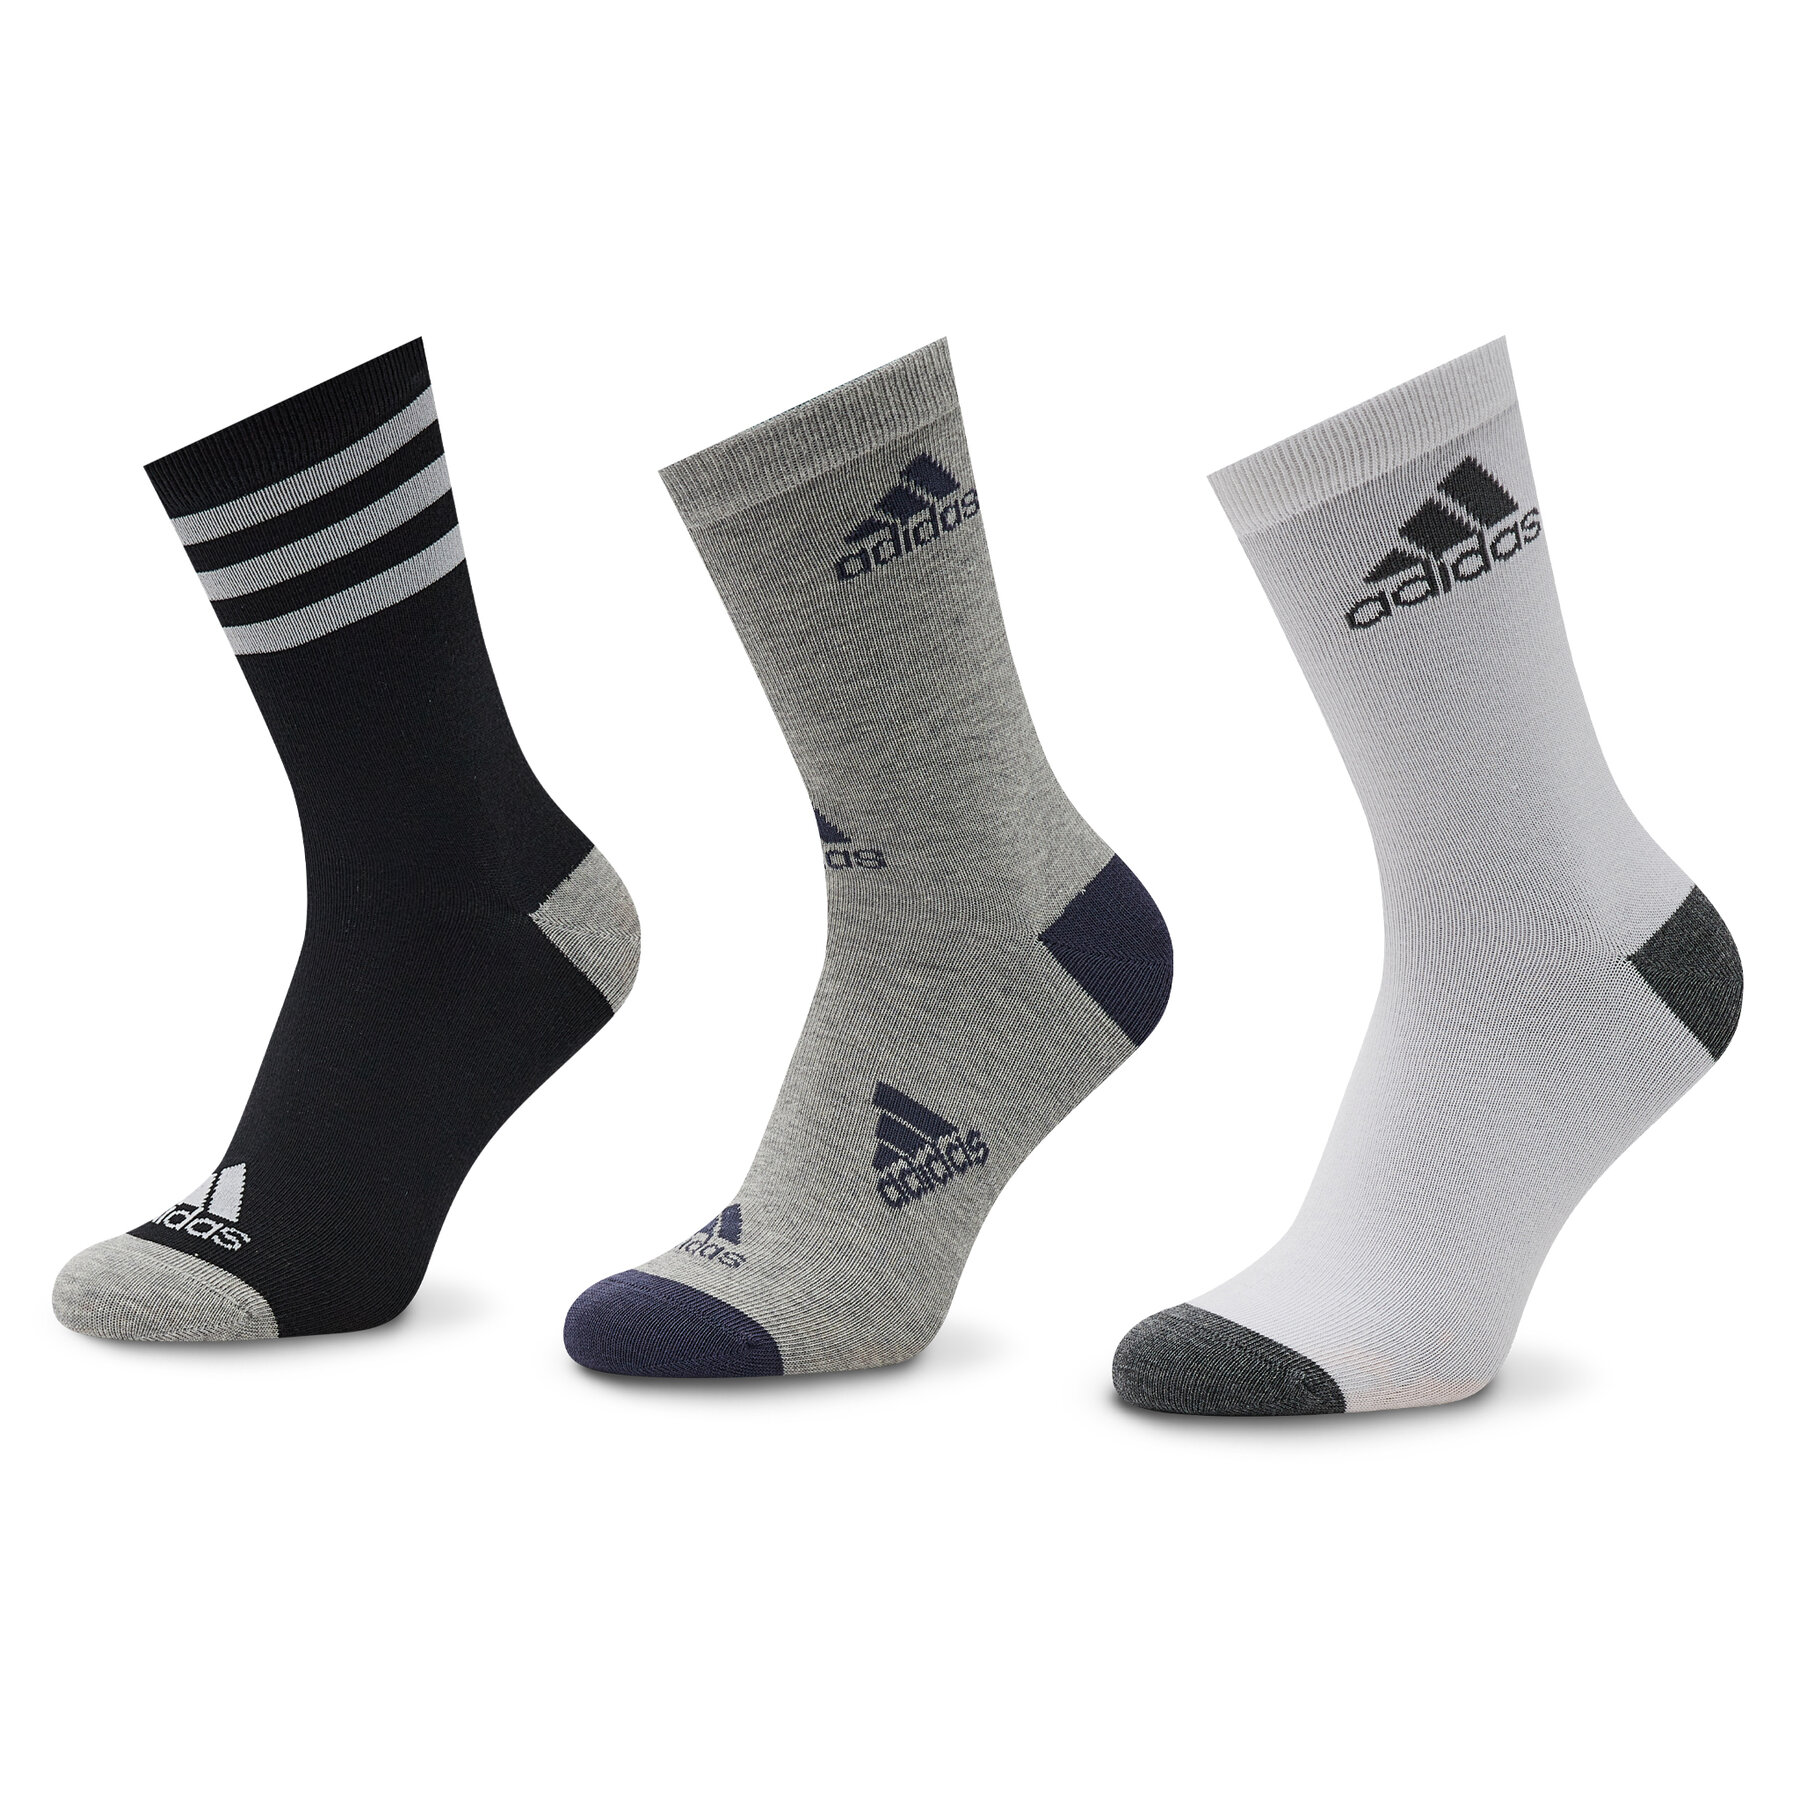 3er-Set hohe Unisex-Socken adidas Graphic HN5736 Black/White/Medium Grey Heather von Adidas